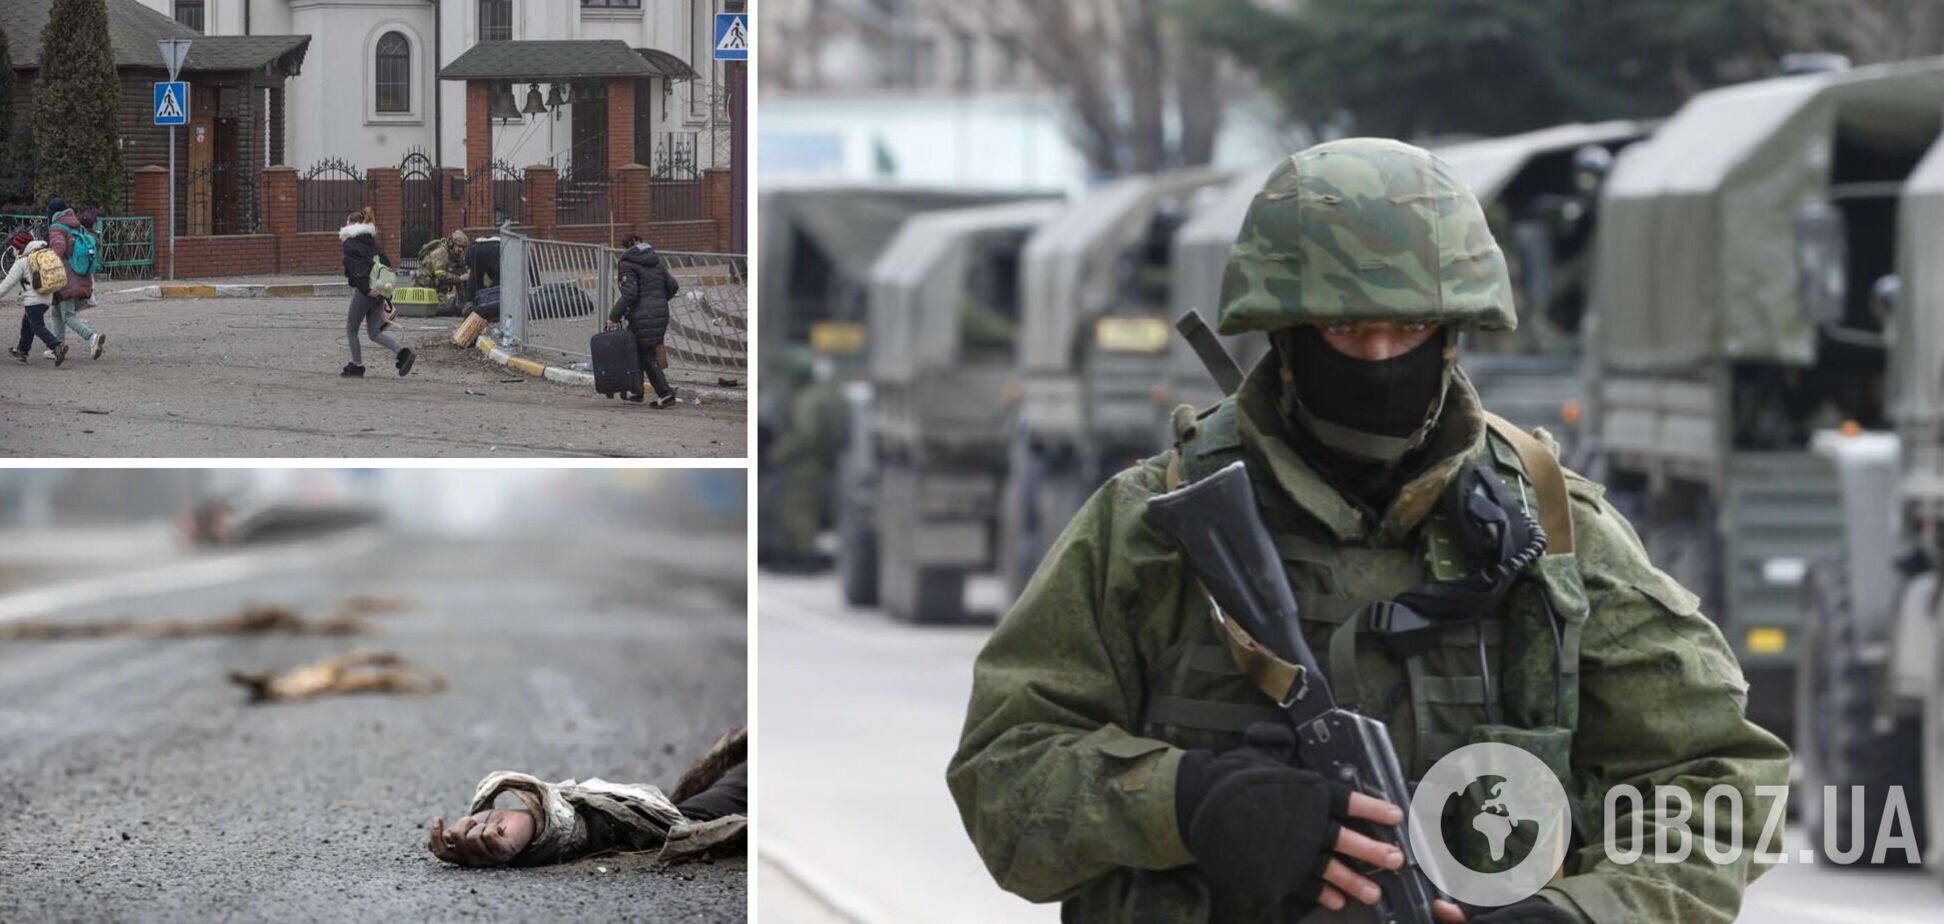 Оккупант признался, что военные РФ в Украине расстреливают женщин. Аудио 18+